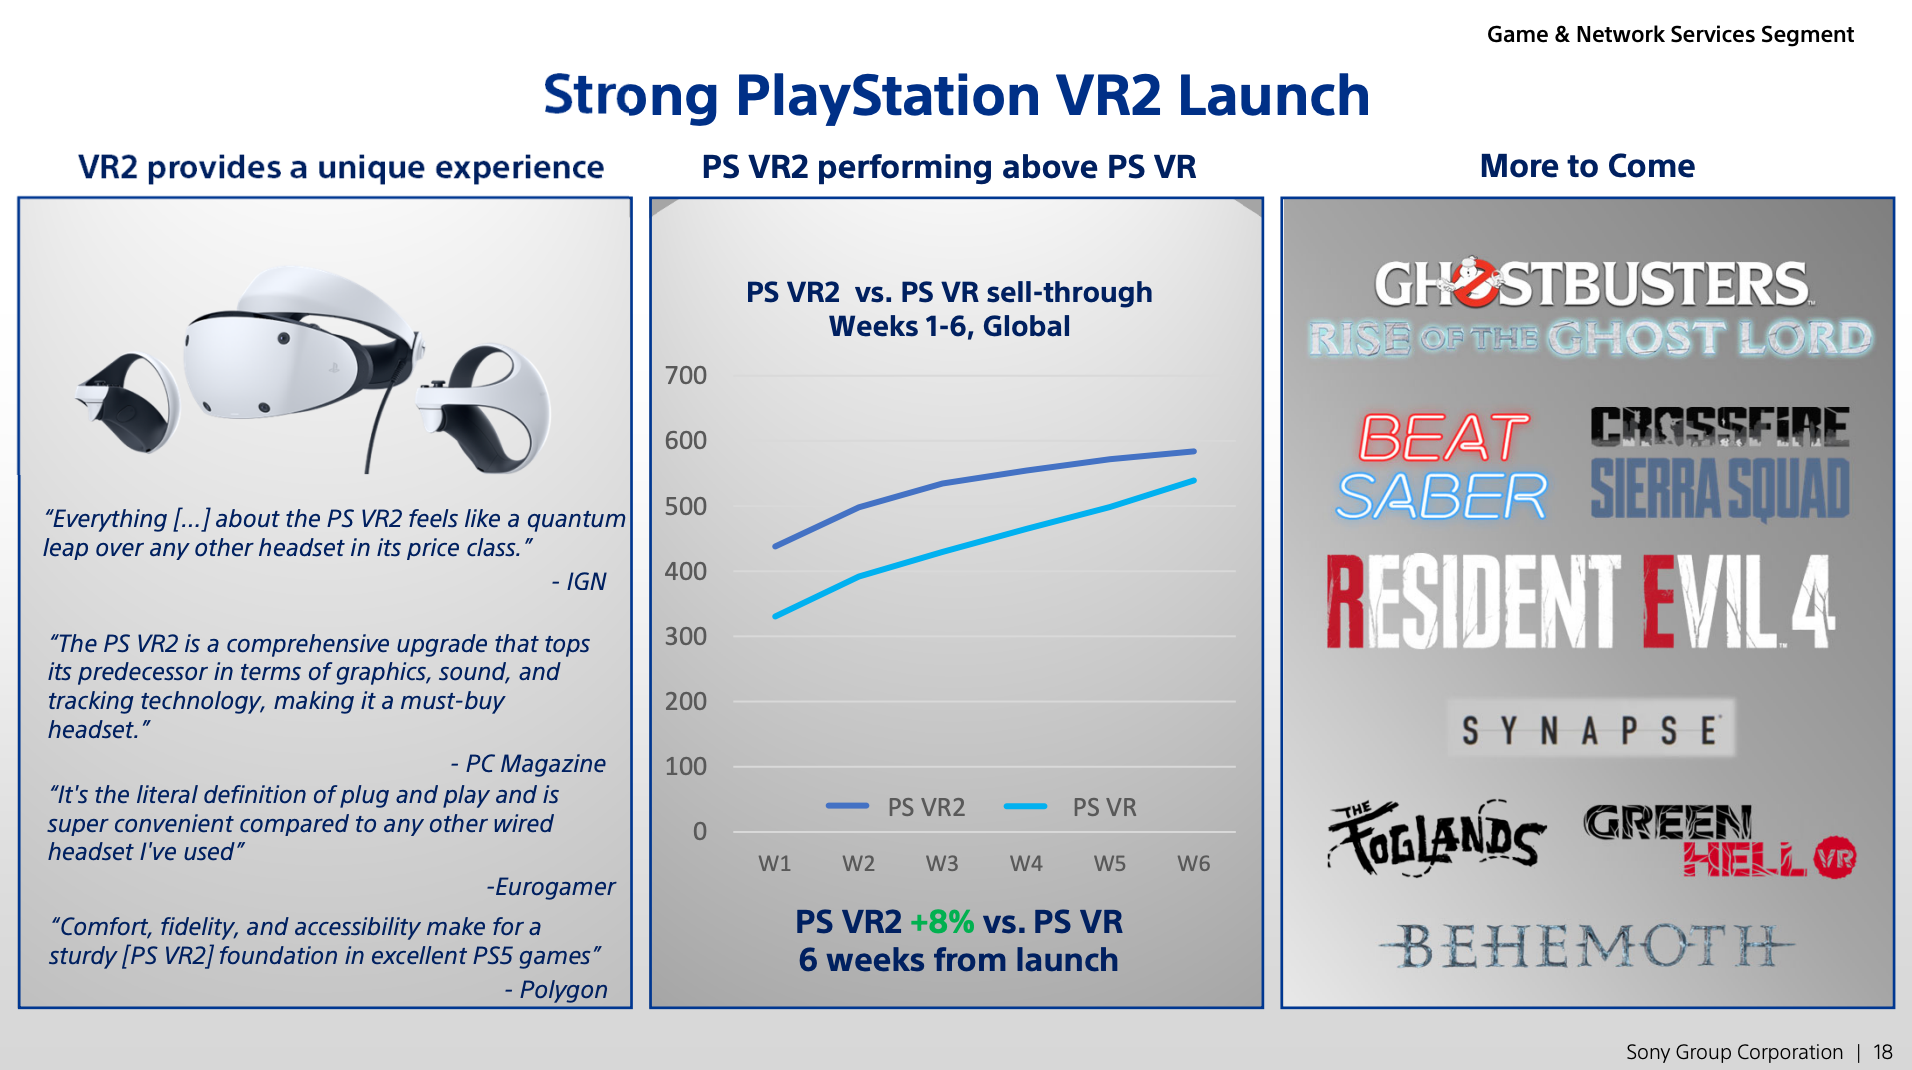 PSVR 2 Sold 600K Units Up To April, Outpacing Original PSVR